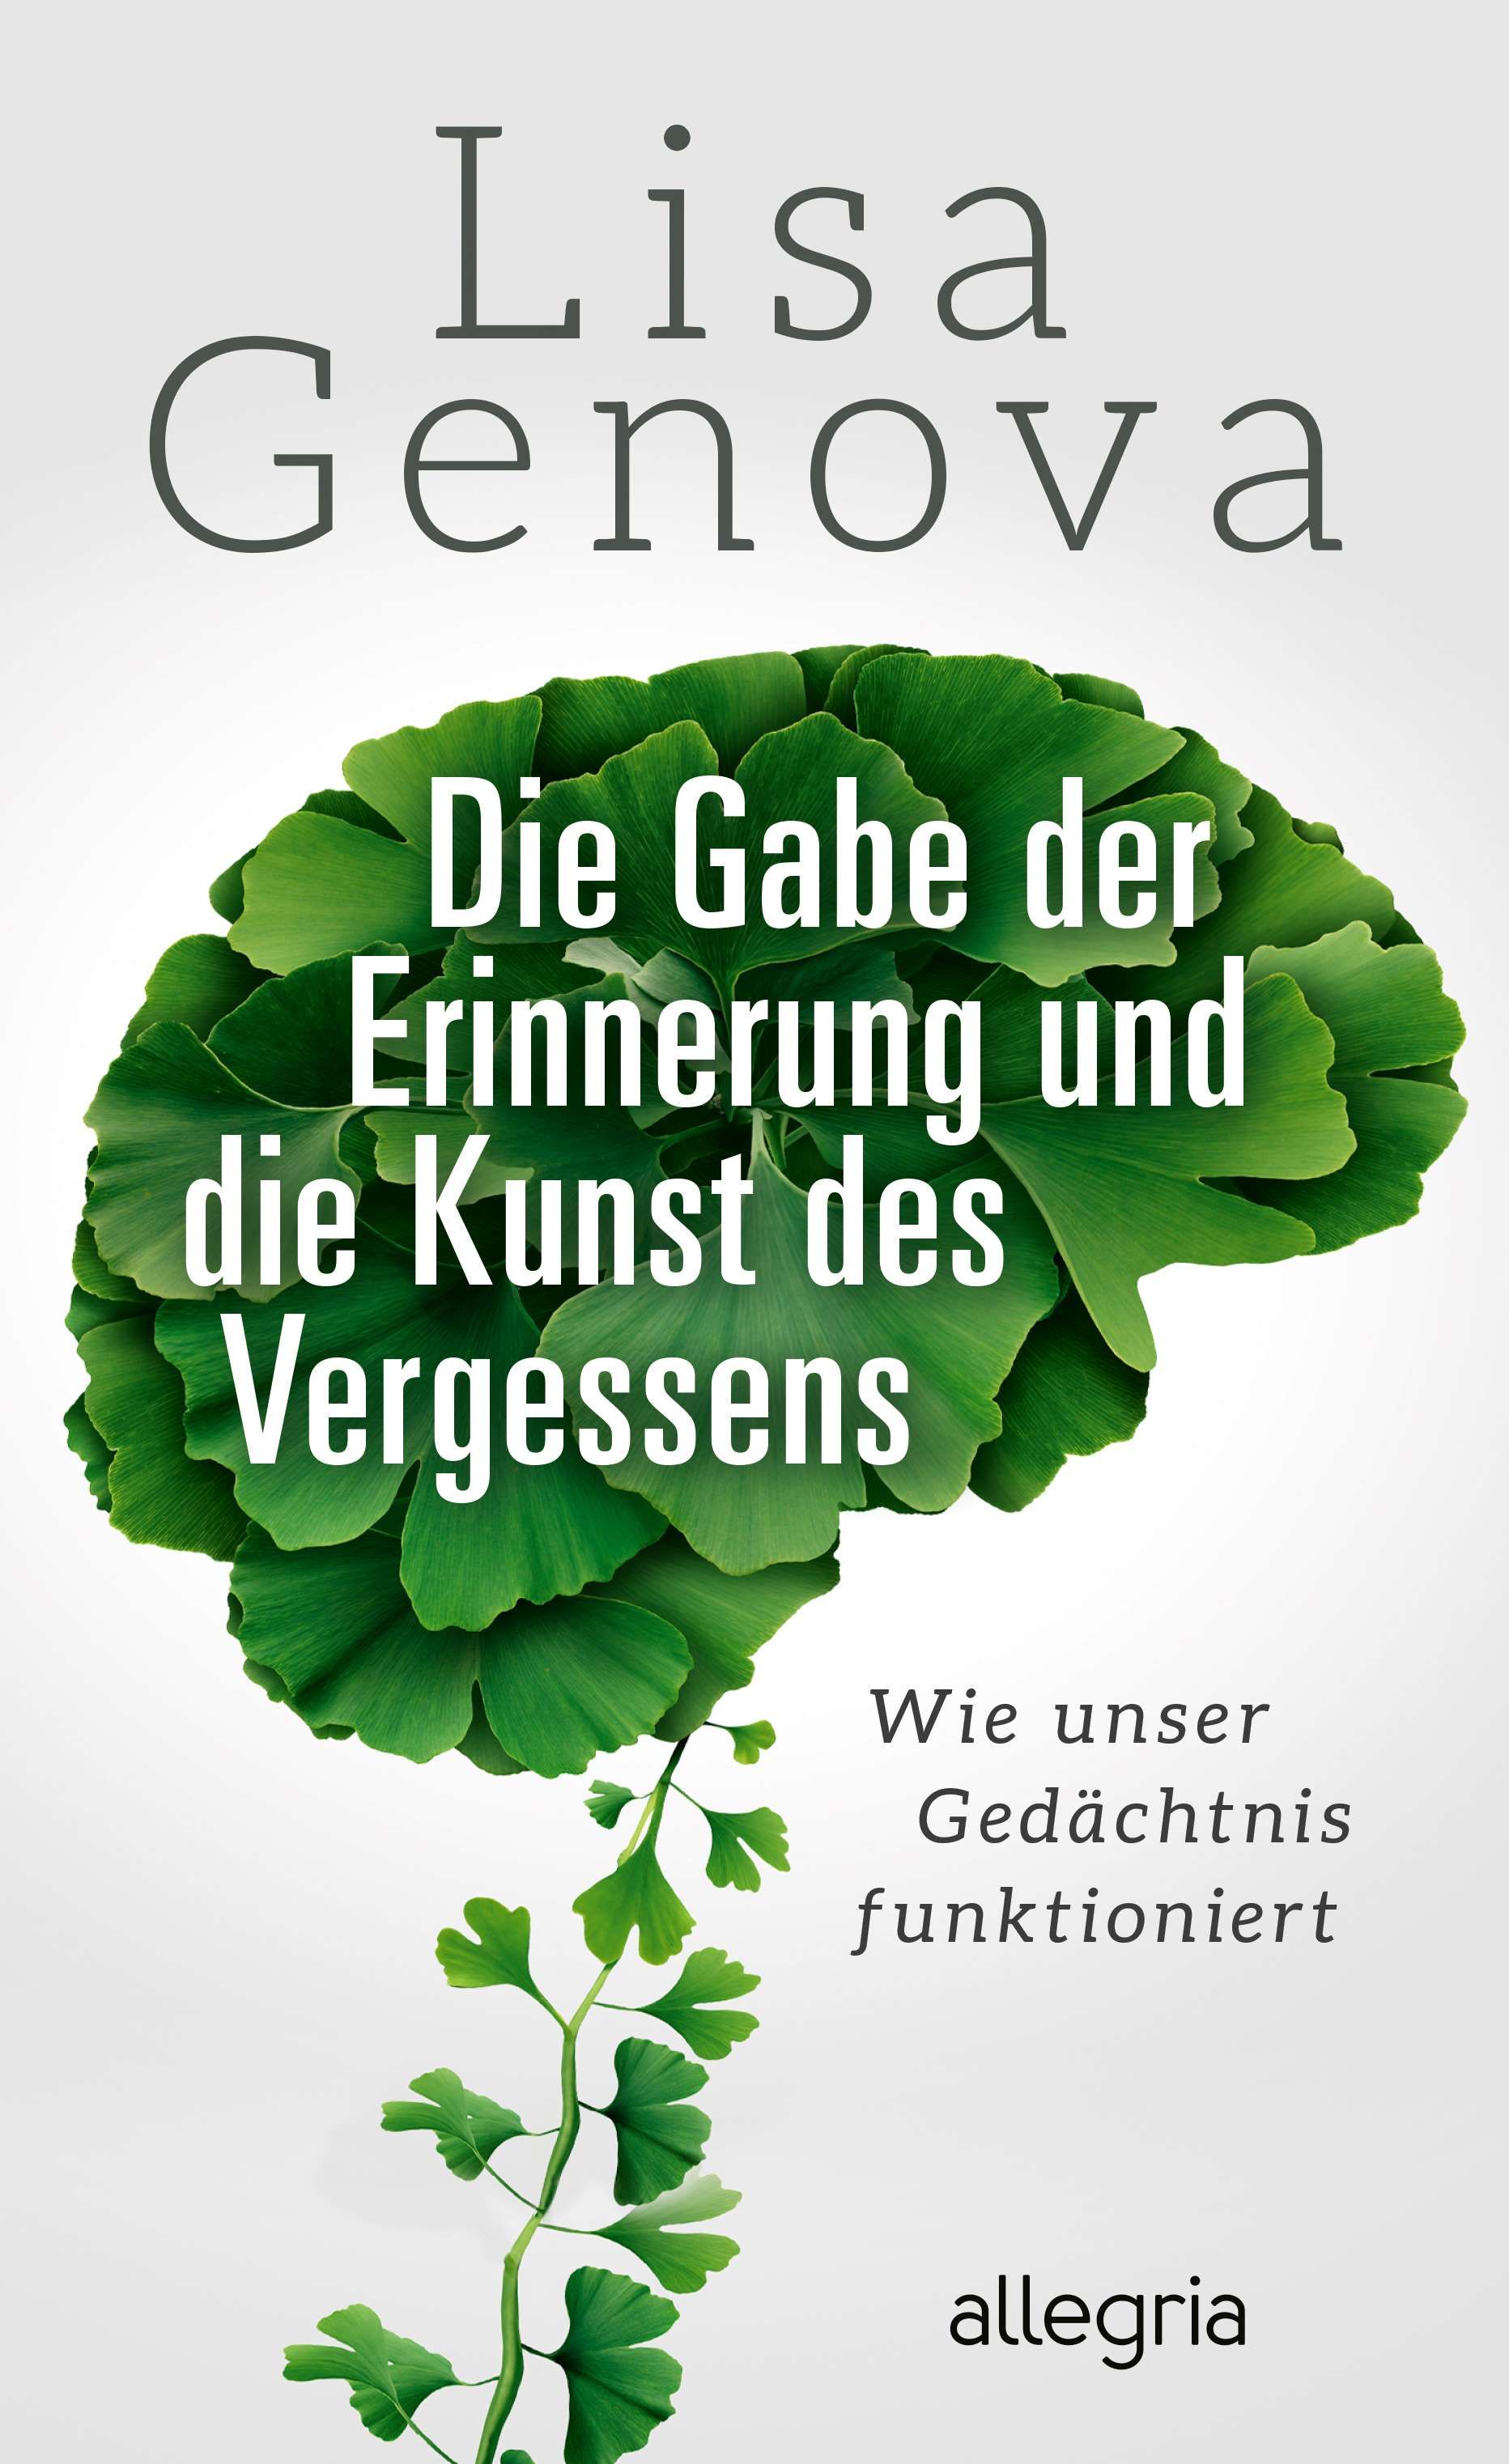 Ein Gehirn aus grünen Blättern, darin der Buchtitel "Die Gabe der Erinnerung und die Kunst des Vergessens!"